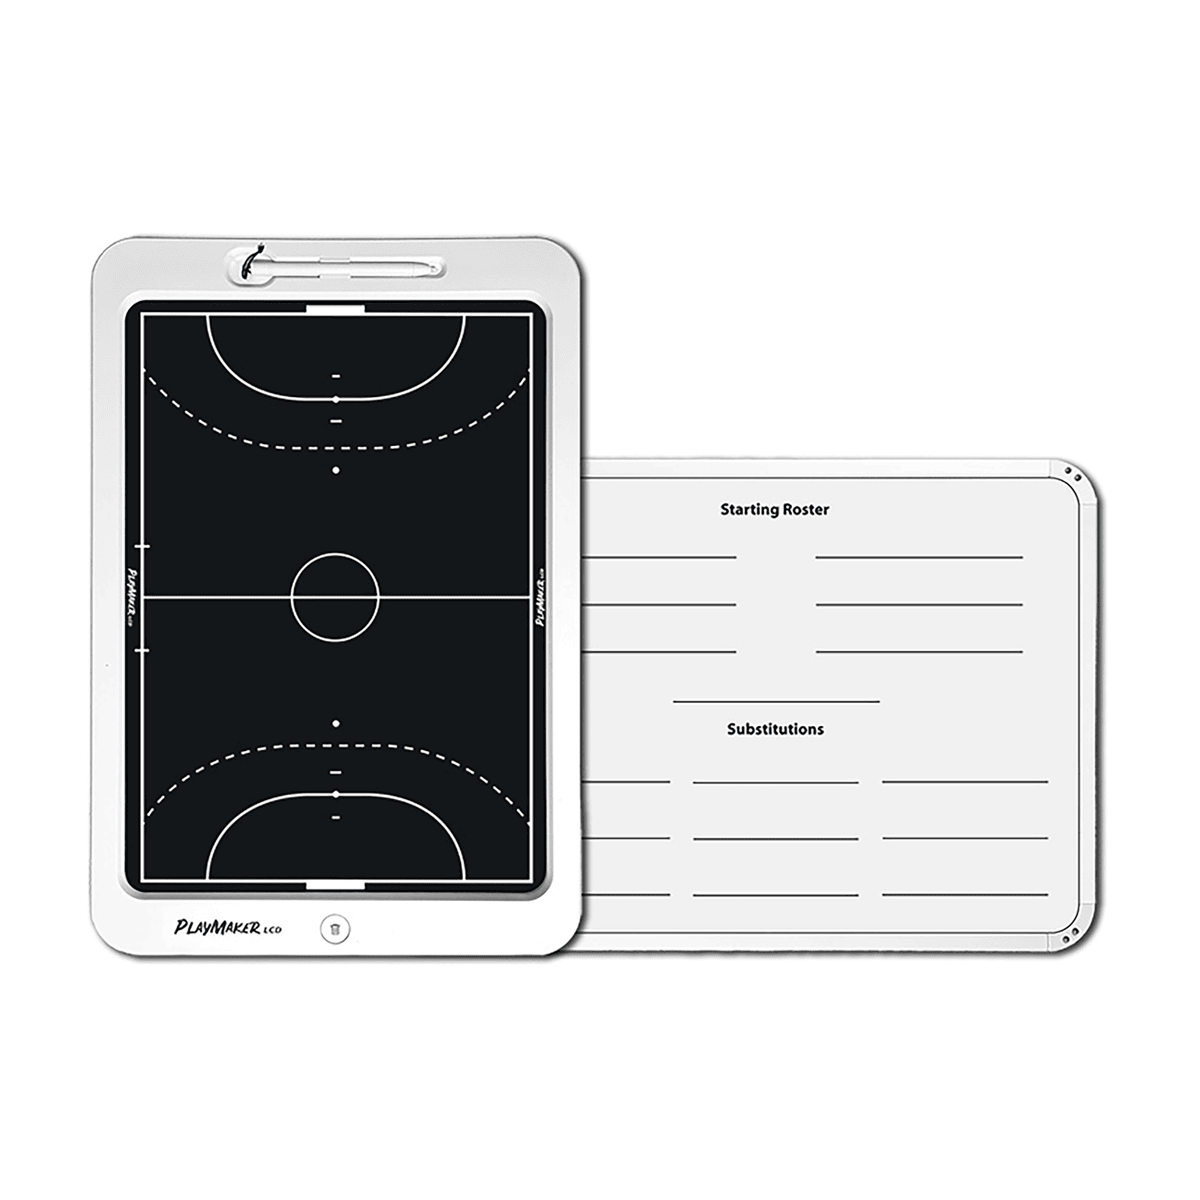 TABLETTE DE COACHING LCD 20 POUCES - HANDBALL-FUTSAL